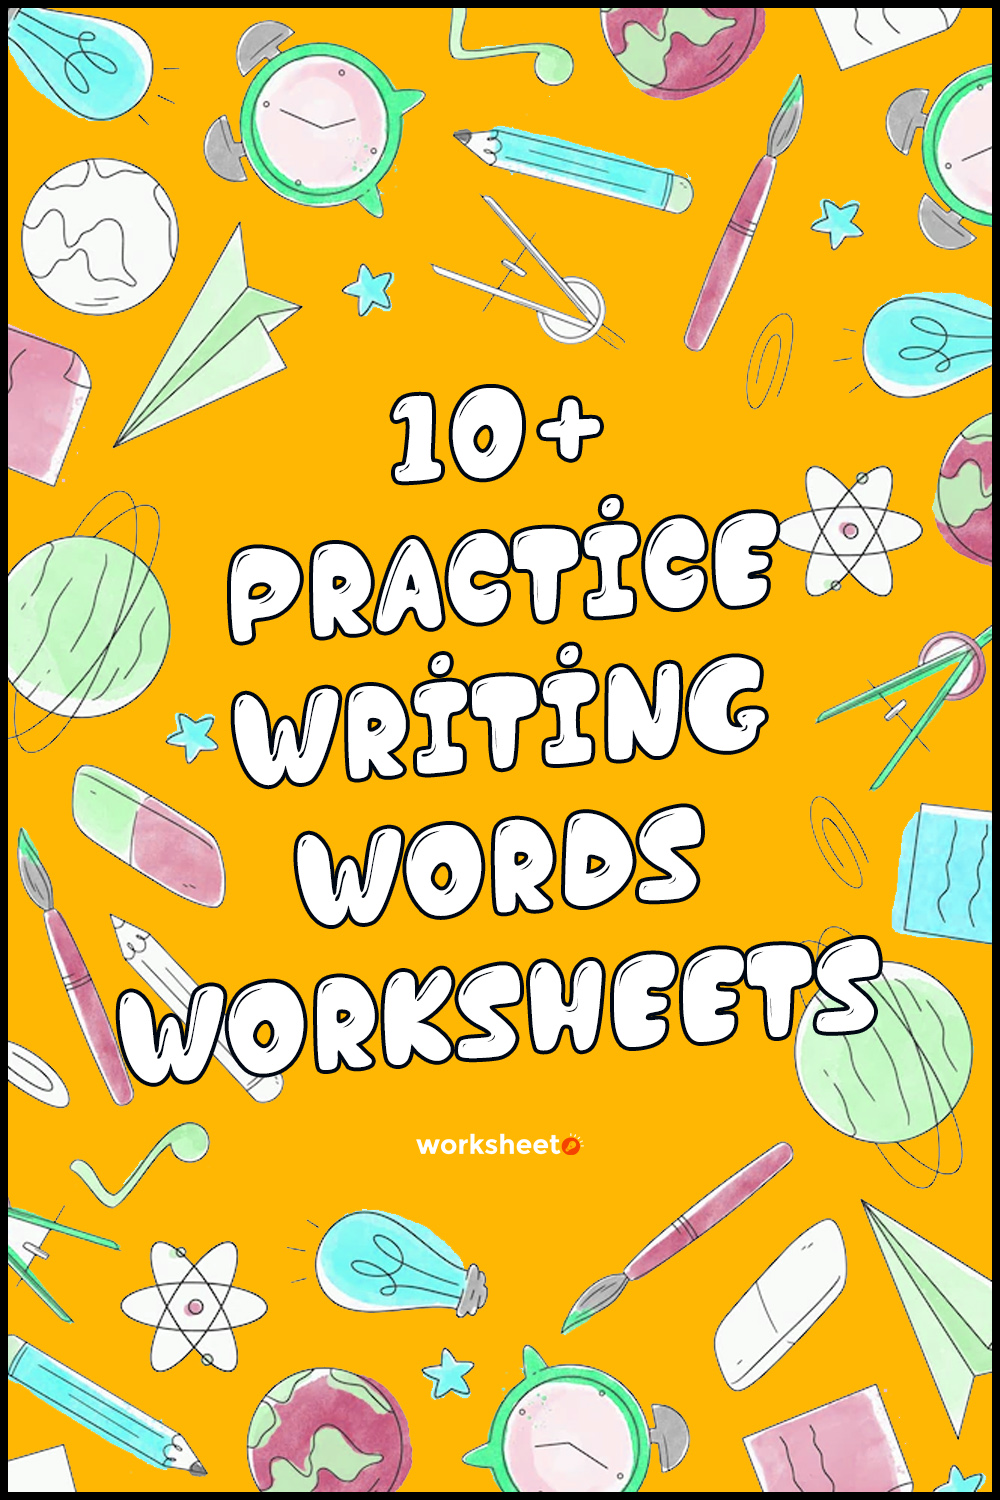 English Writing Practice Worksheets Pdf Free Download